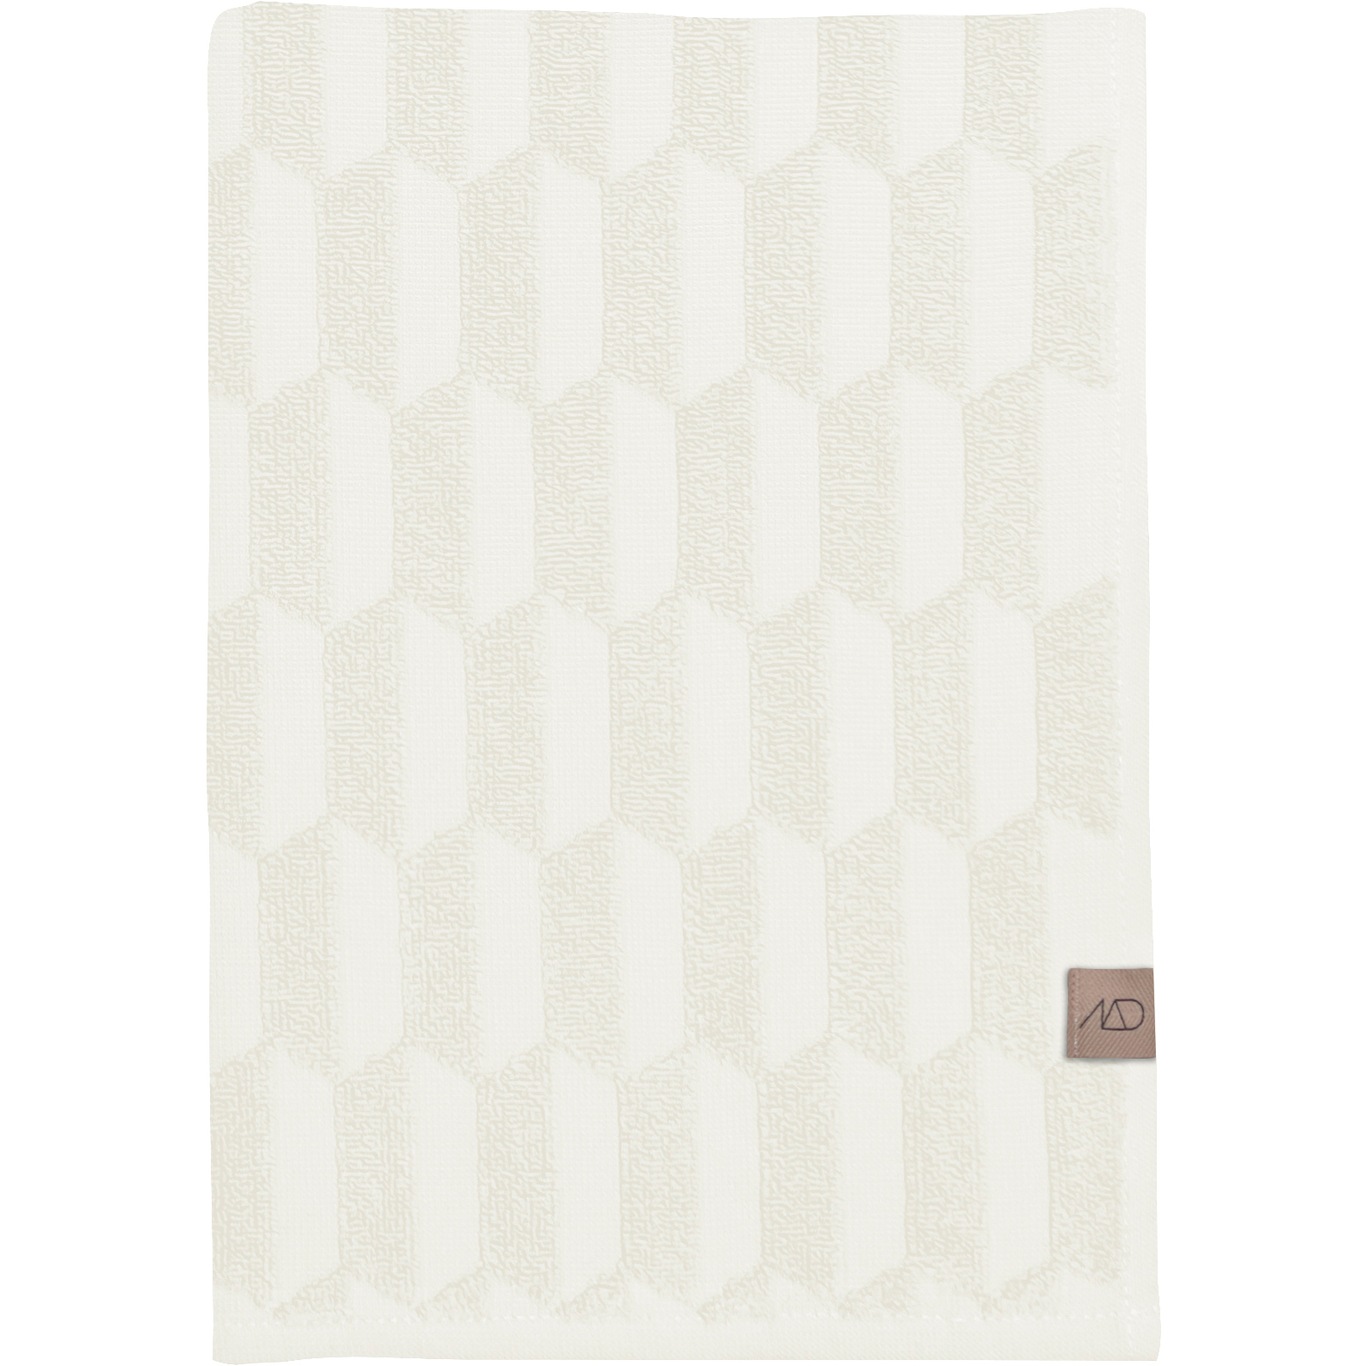 Geo Handtuch Off-white 2-er Set, 35x55 cm